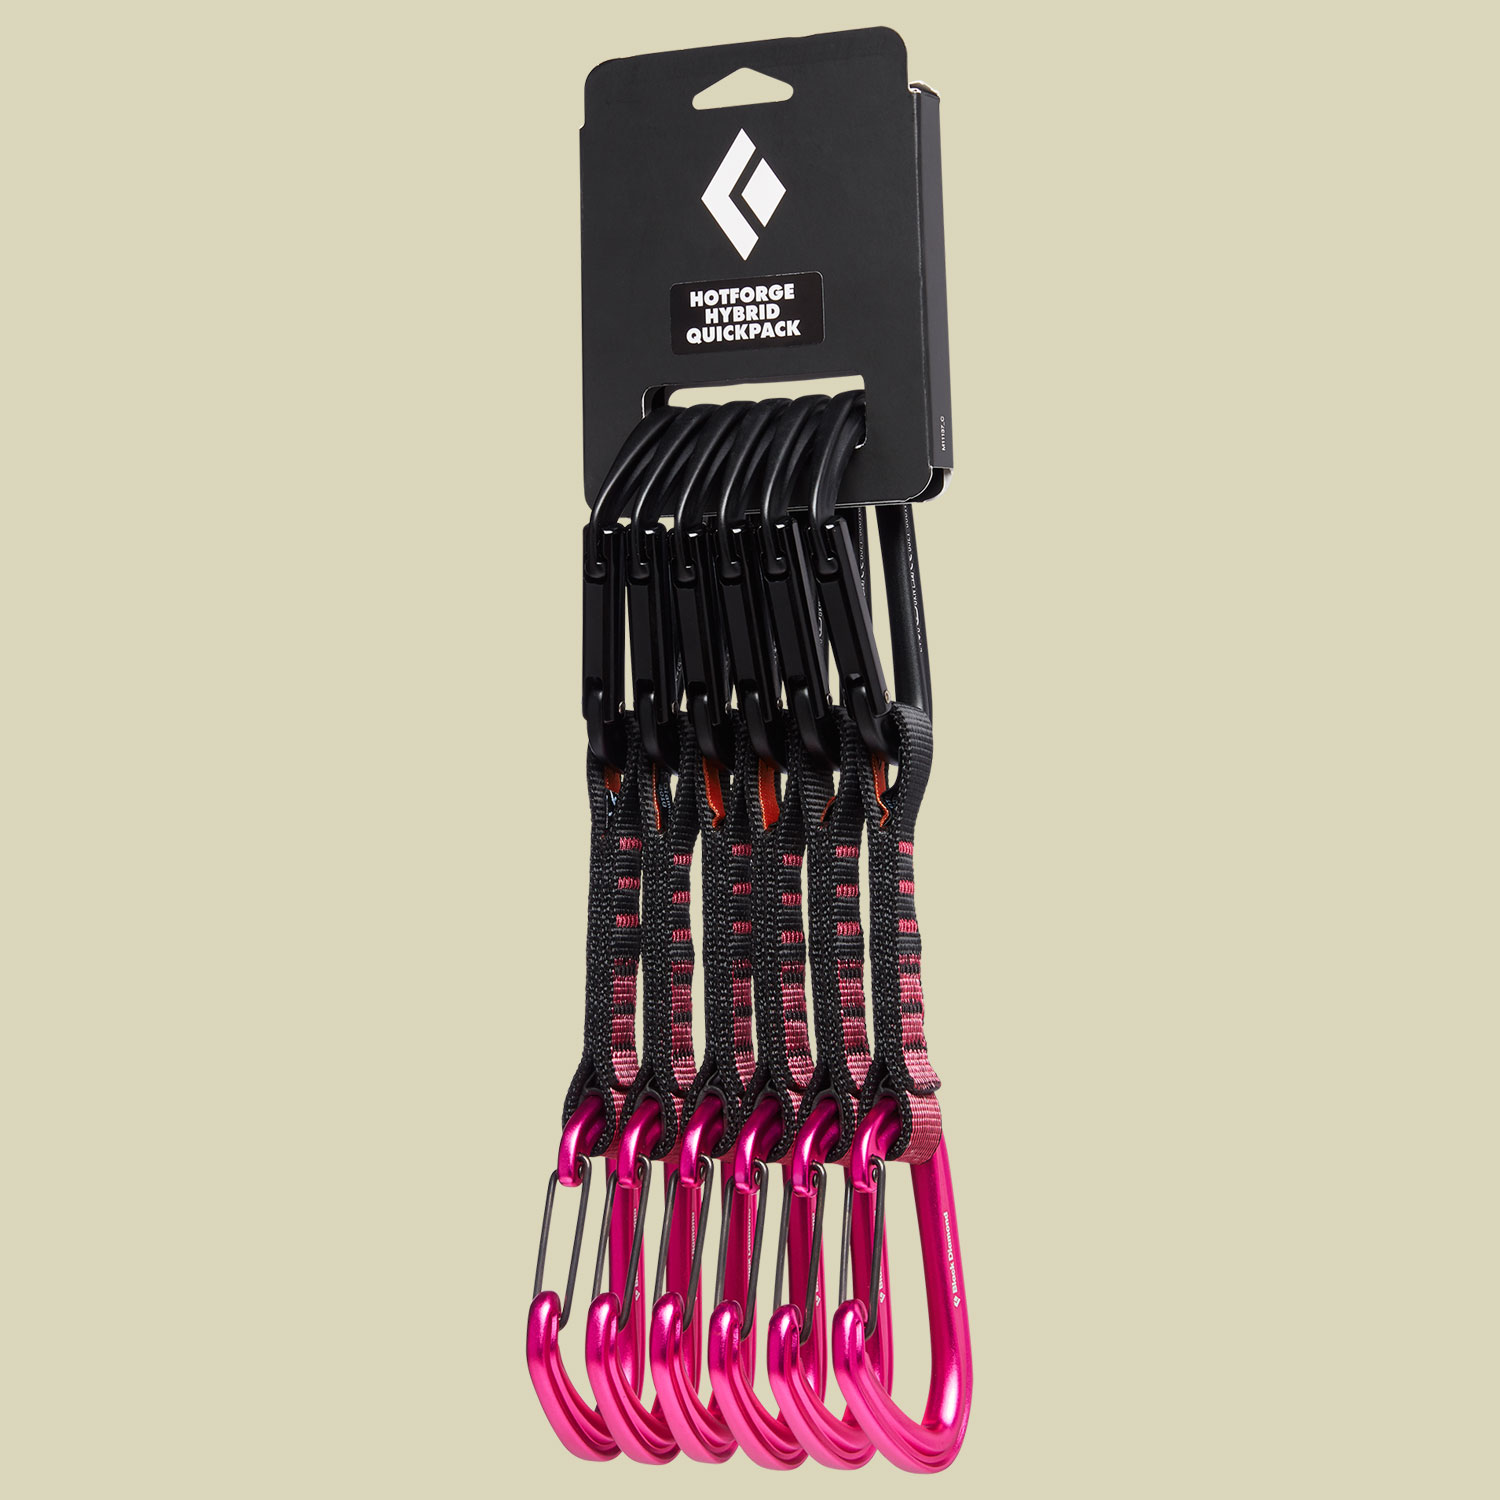 Hotforge Hybrid Quickpack Länge 12 cm Farbe pink von Black Diamond